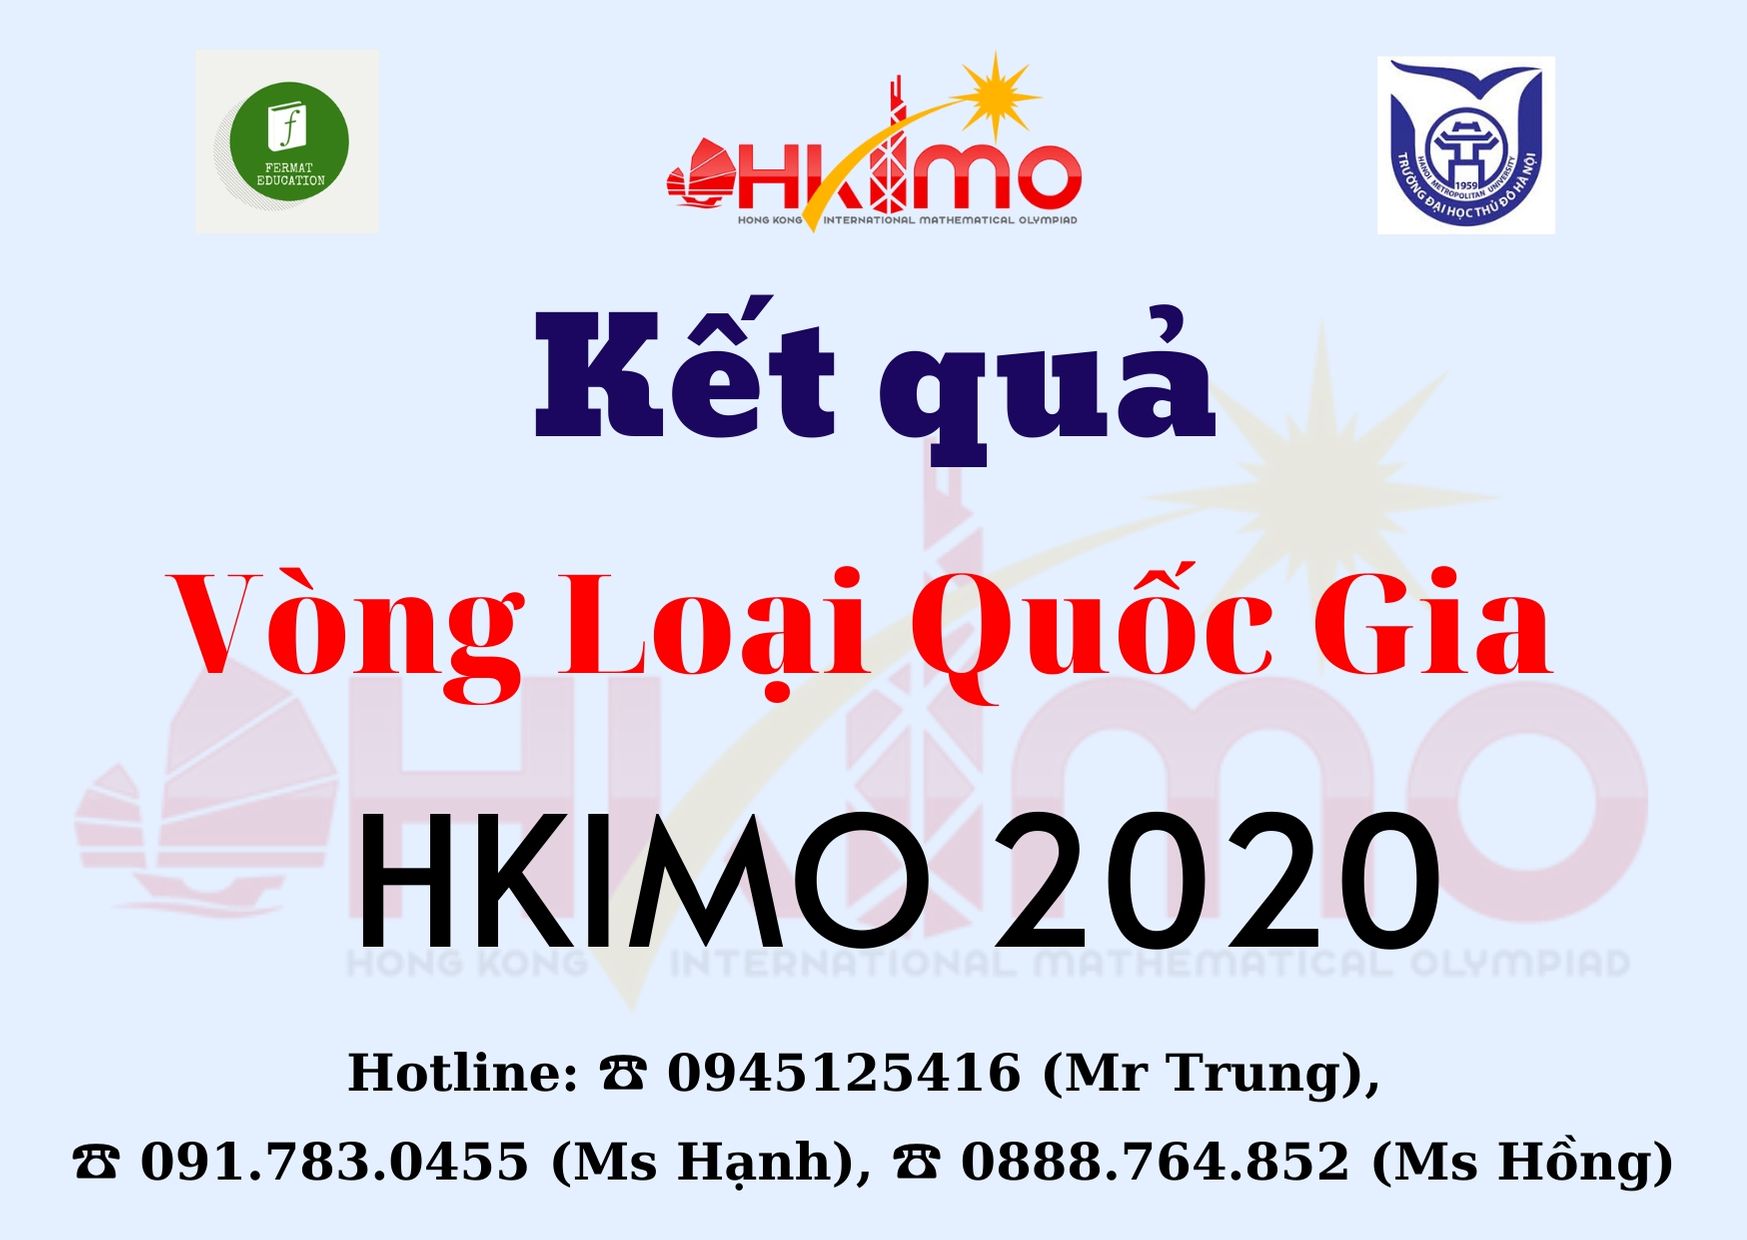 KẾT QUẢ VÒNG LOẠI QUỐC GIA KỲ THI OLYMPIC TOÁN HỌC QUỐC TẾ HKIMO 2020